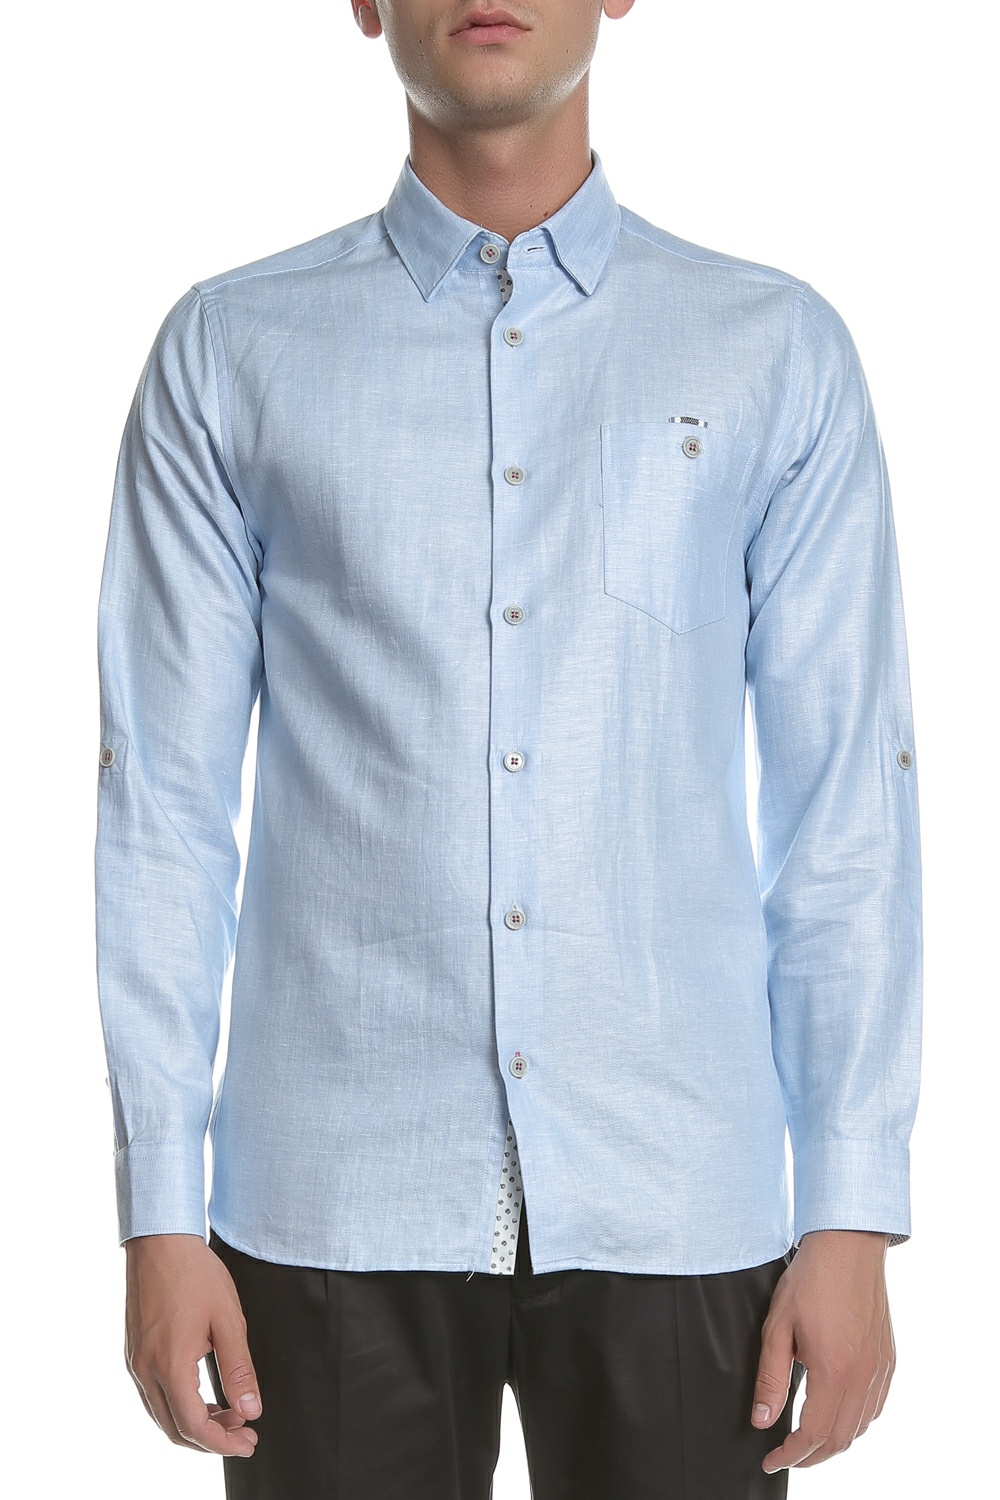 Ανδρικά/Ρούχα/Πουκάμισα/Μακρυμάνικα TED BAKER - Ανδρικό μακρυμάνικο λινό πουκάμισο TED BAKER JAAMES γαλάζιο